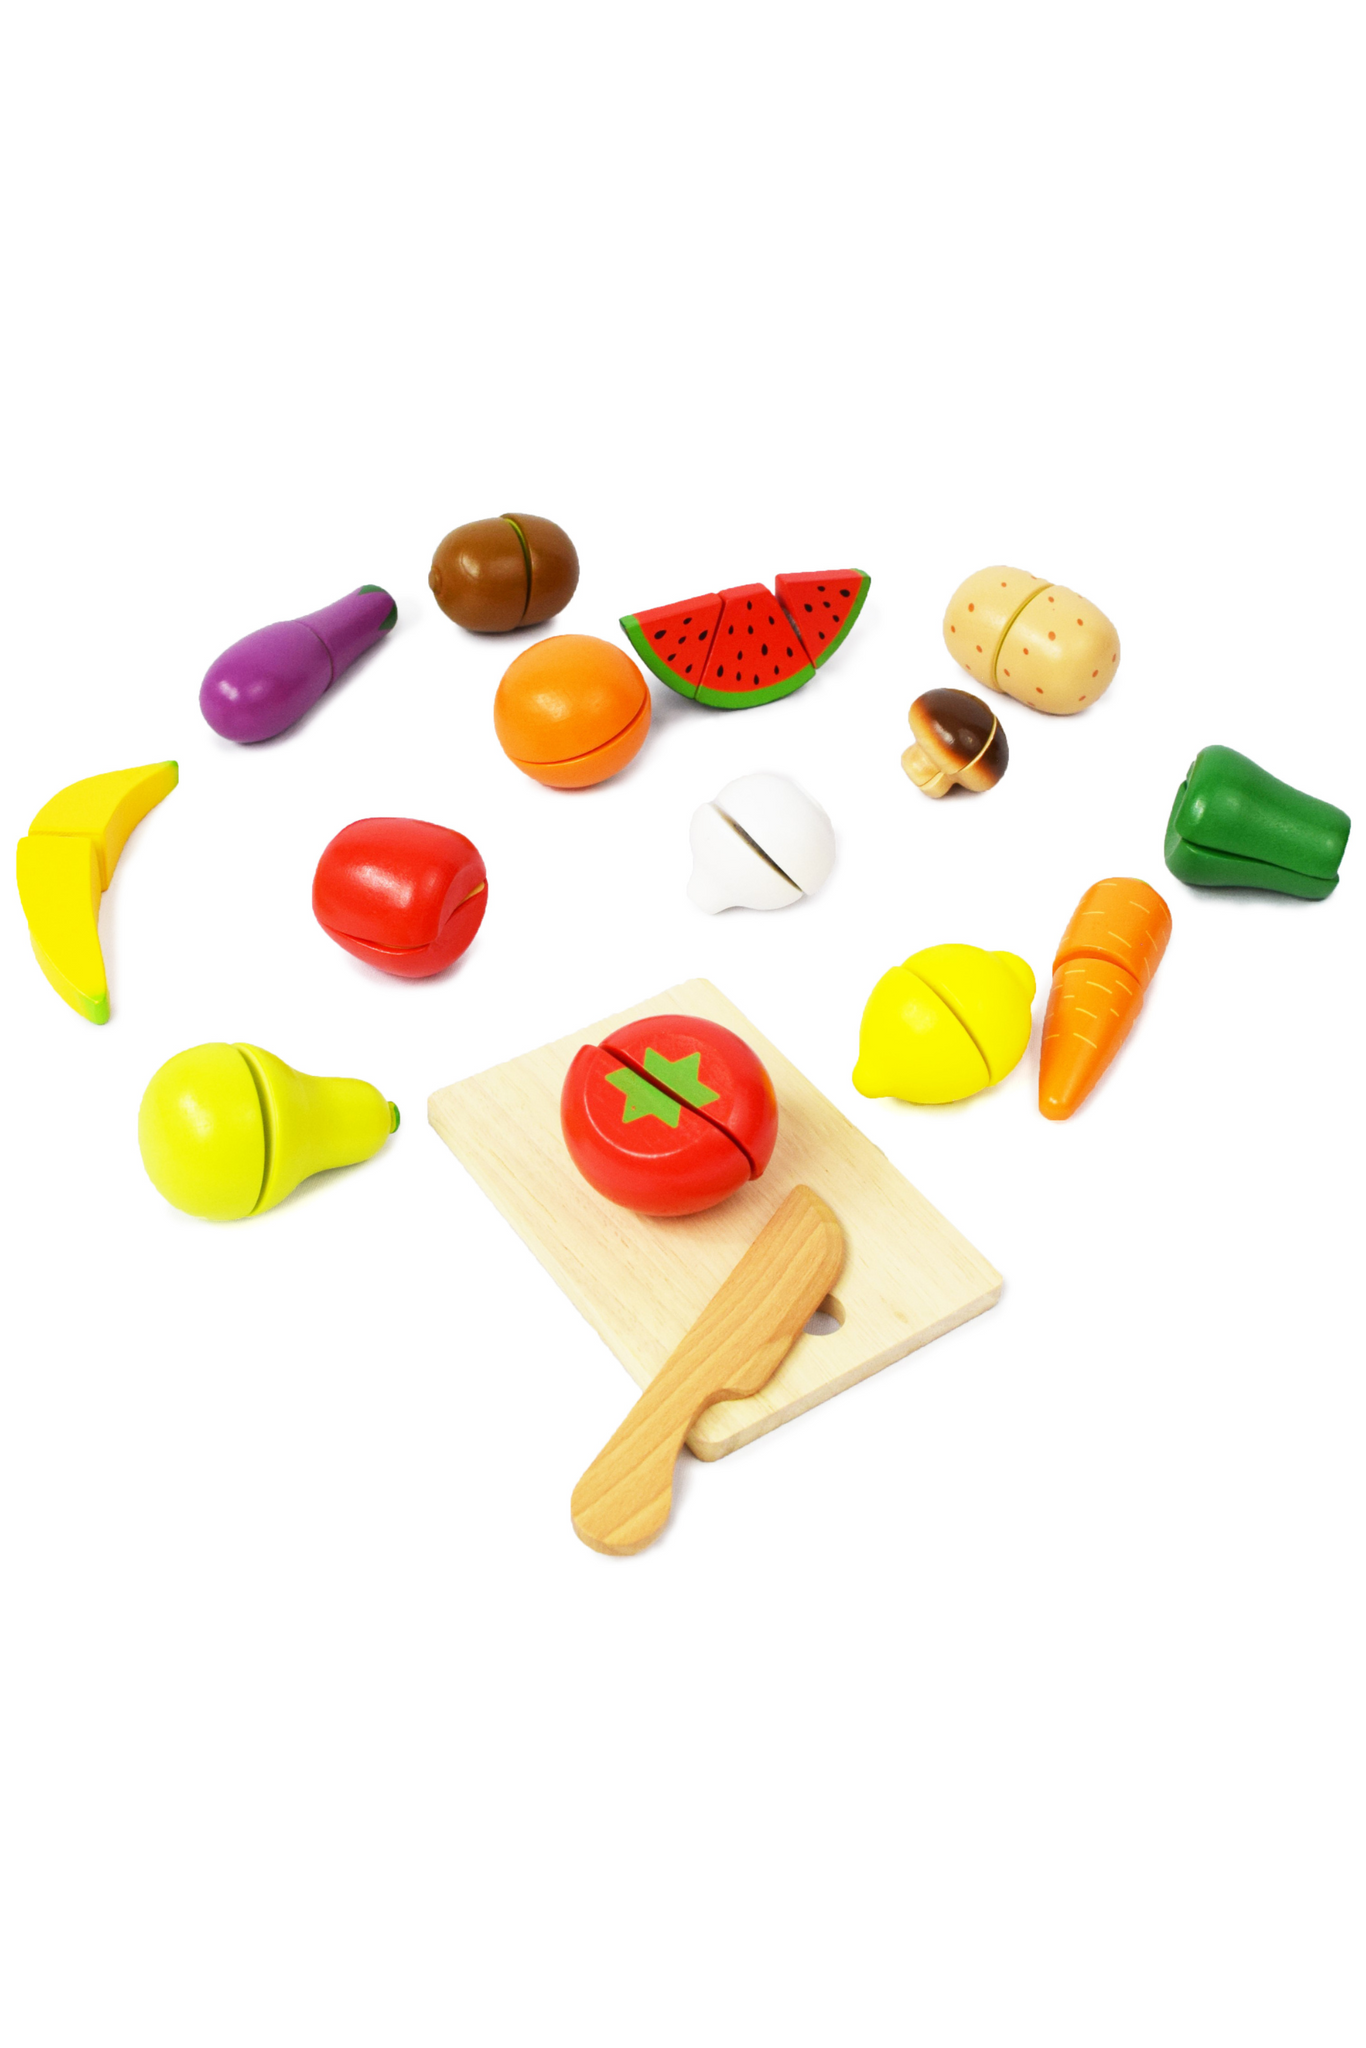 Juego de frutas y verduras para niños